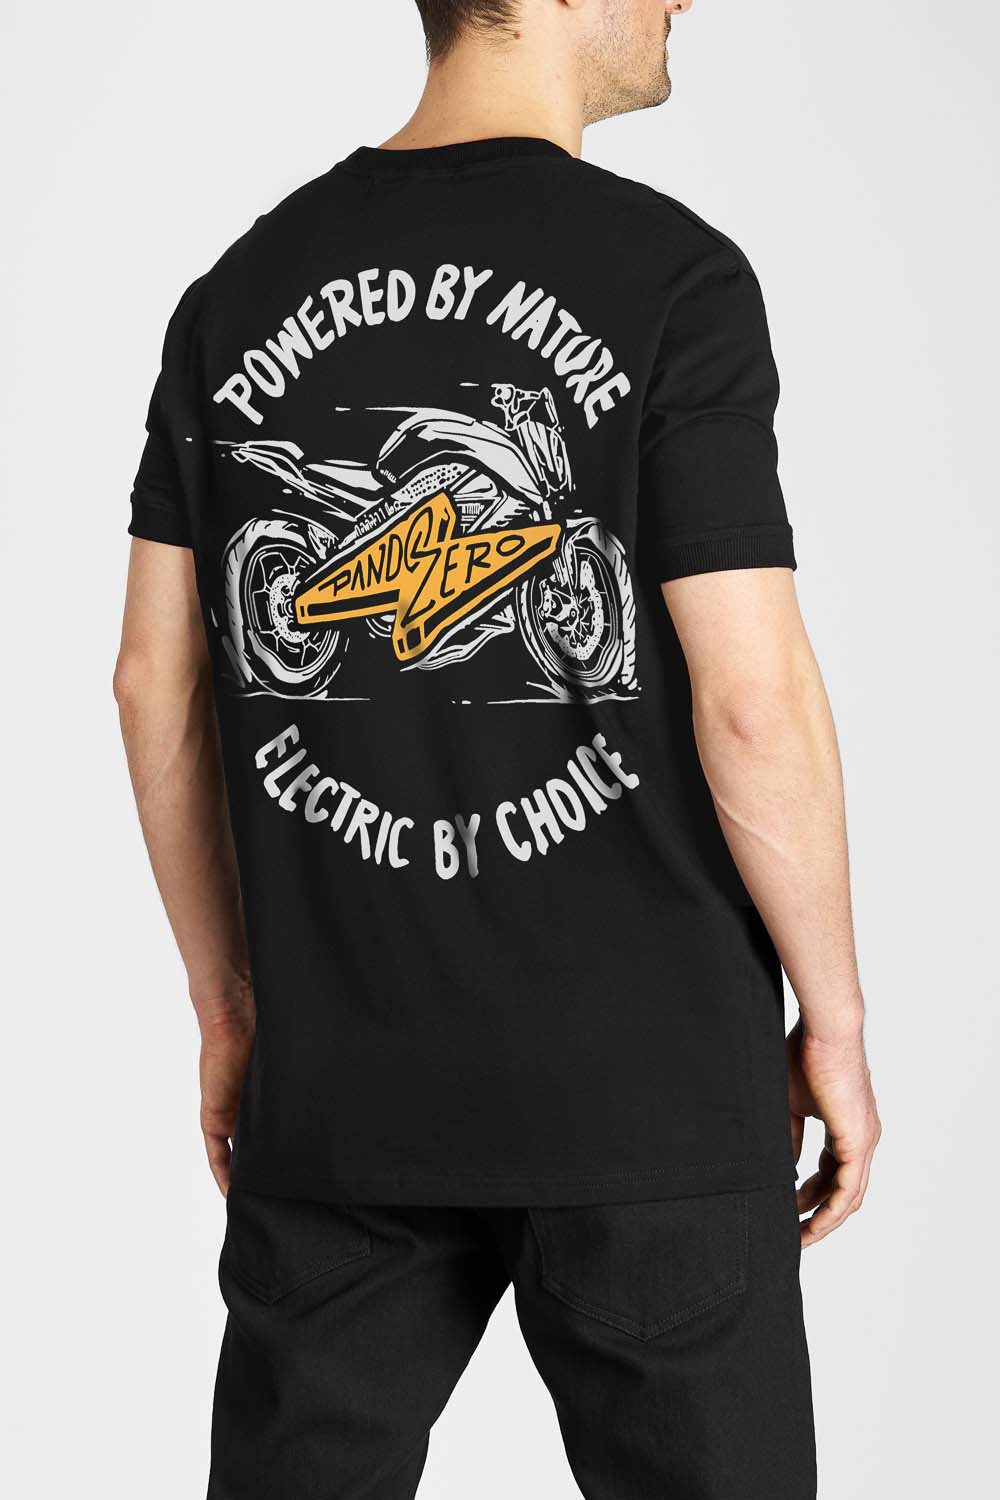 MIKE ZERO 1 - T-Shirt für Biker Regular Fit Limited Edition 3